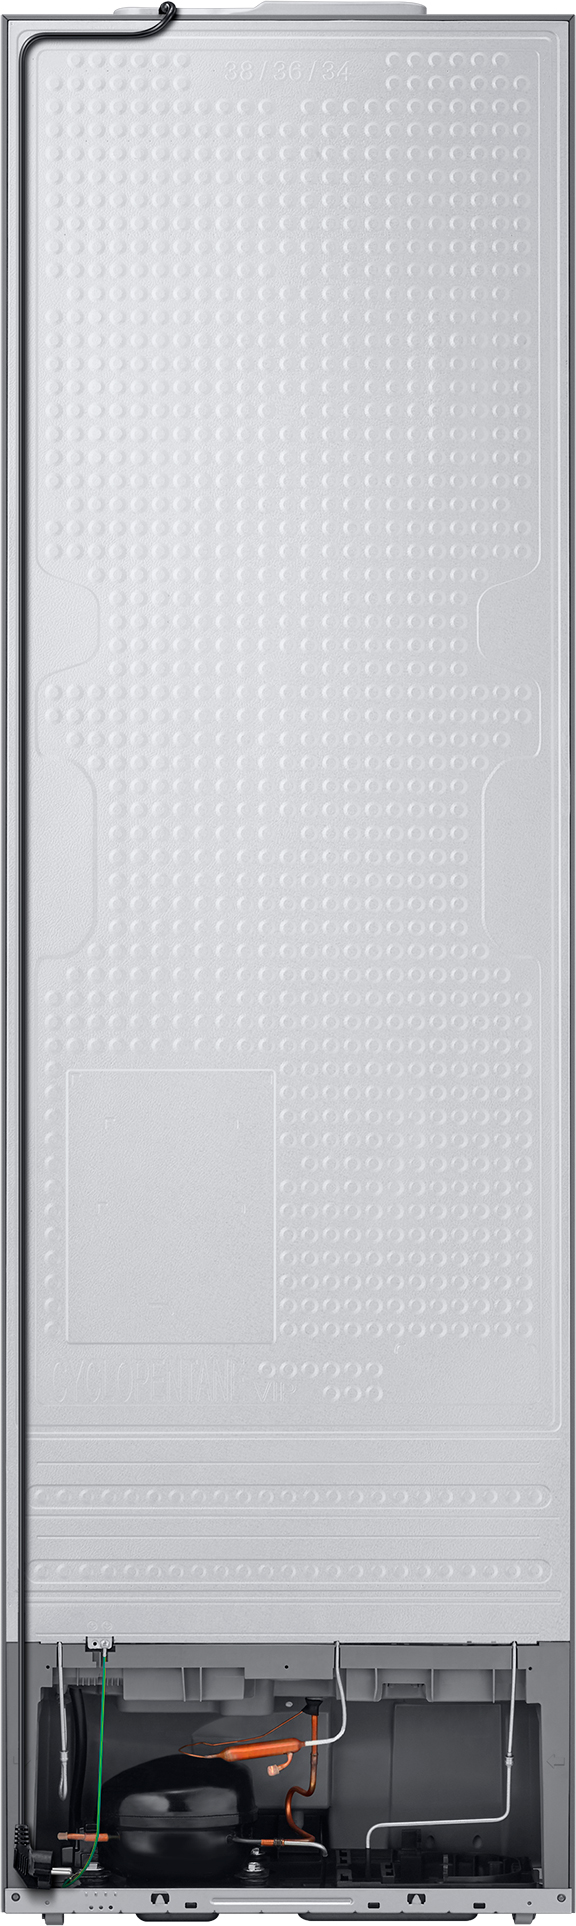 обзор товара Холодильник Samsung RB38A6B6212/UA - фотография 12